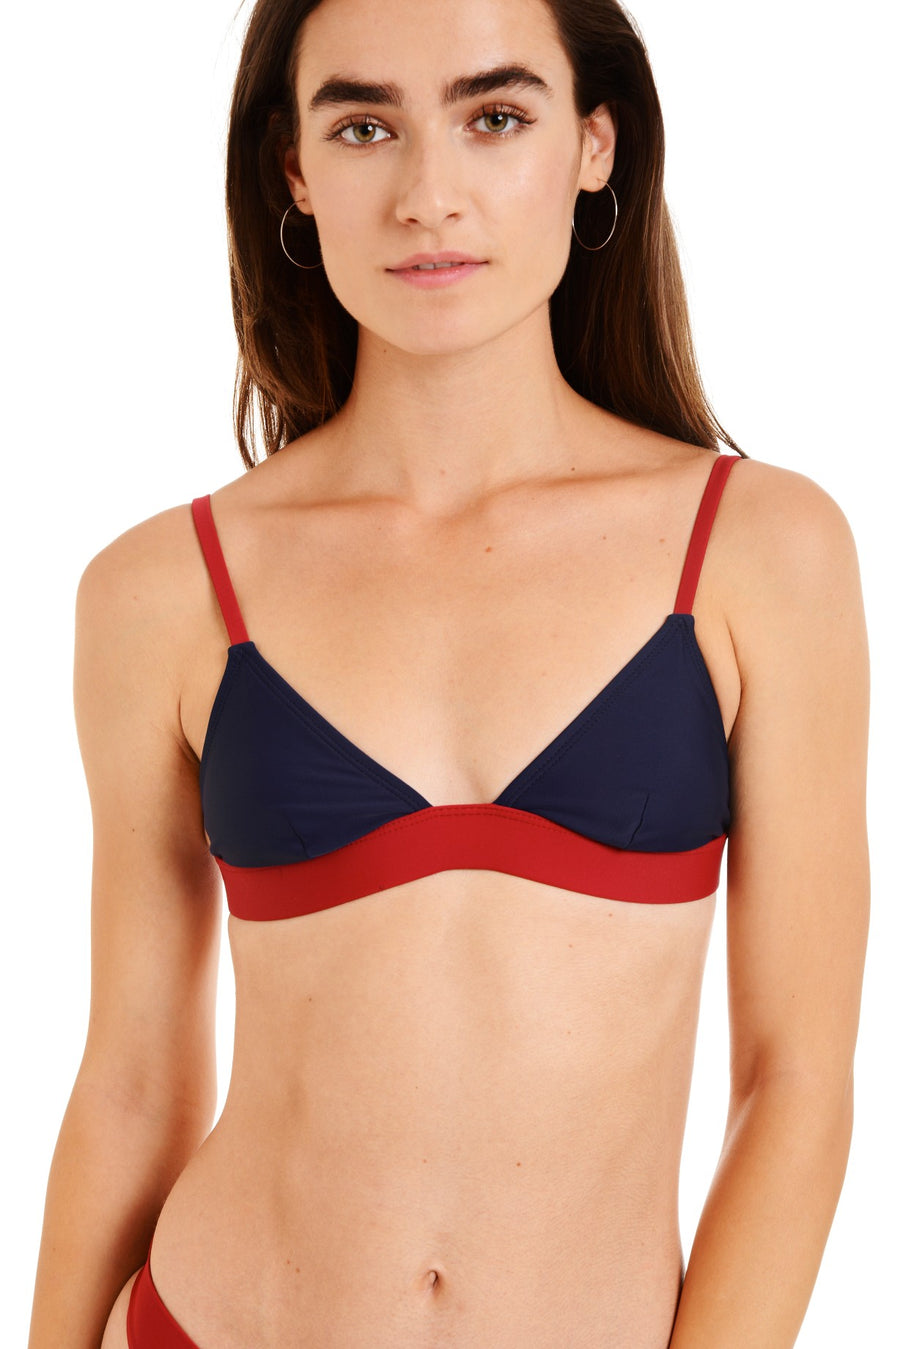 A young woman wearing a red top, bikini … – Buy image – 12480813 ❘